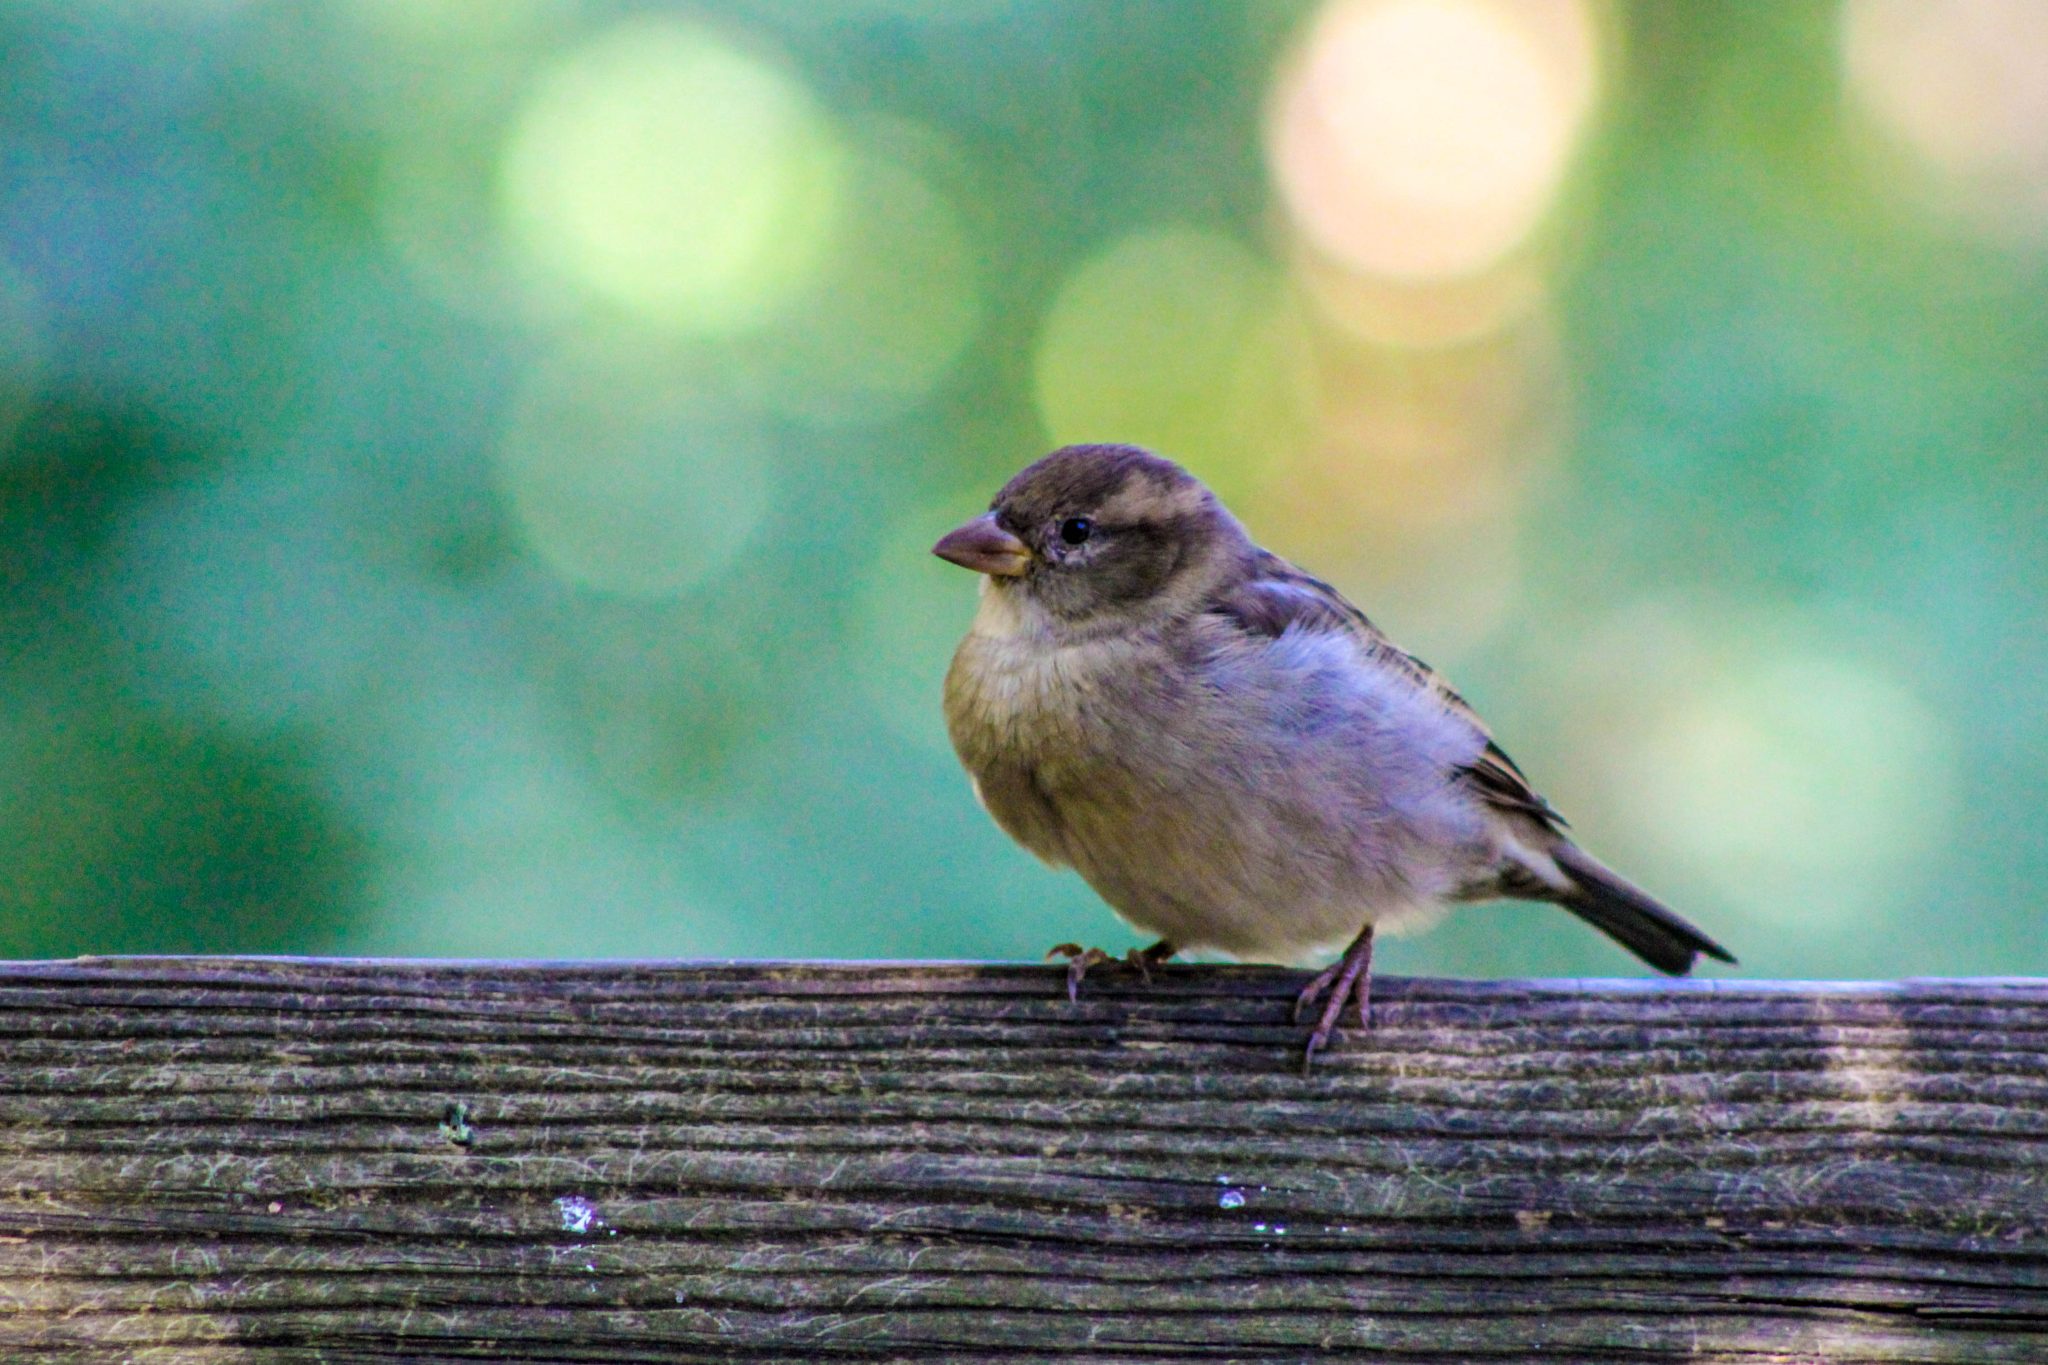 Sparrow, Rochester, New York, USA